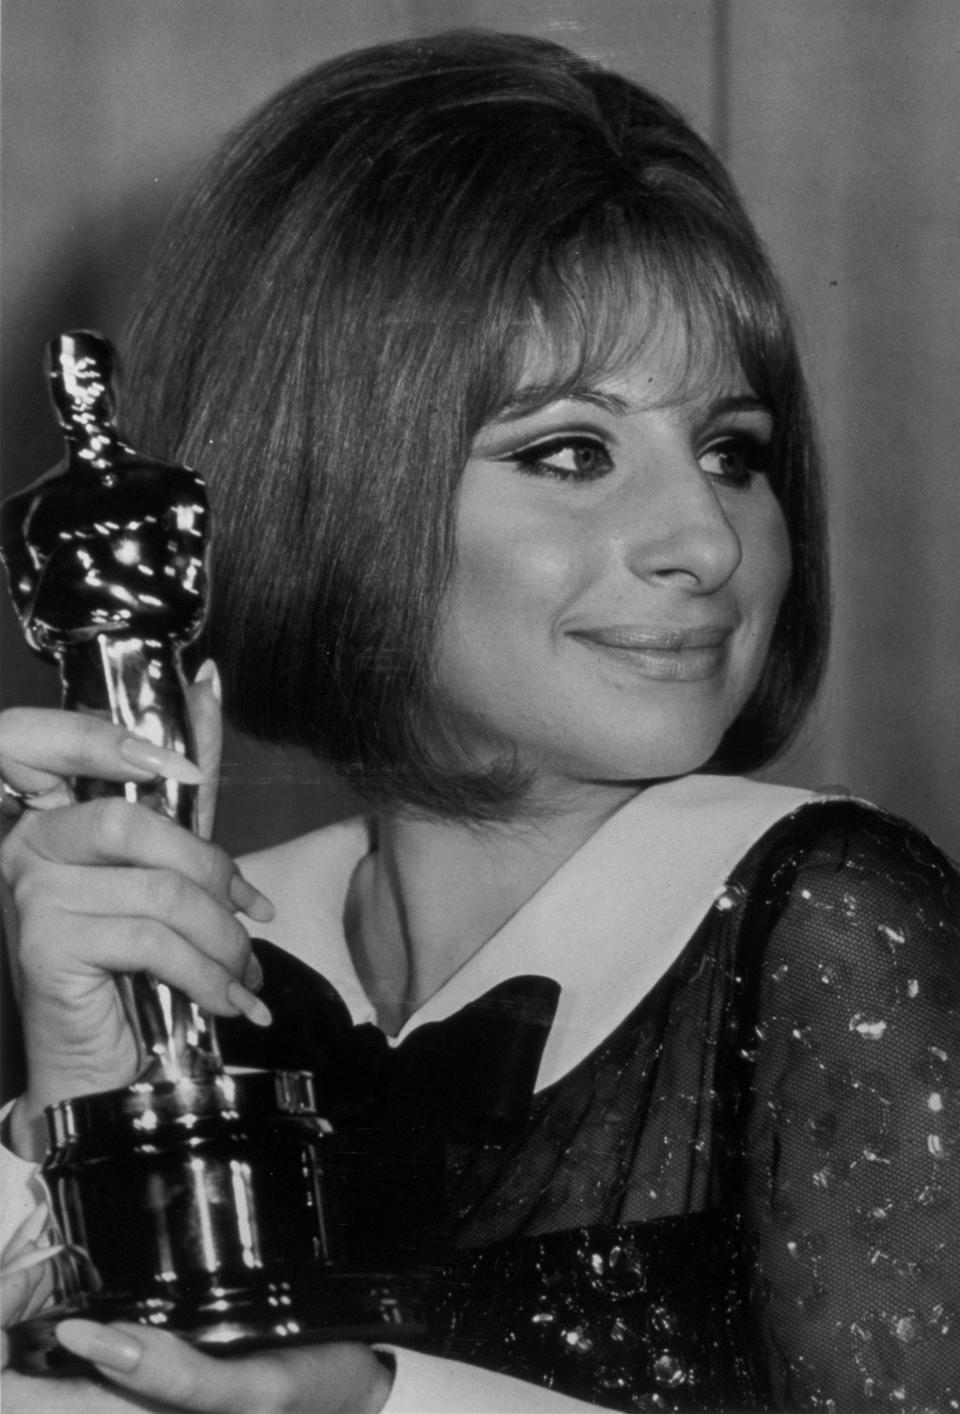 <p>Bis heute hat Streisand über 35 Studioalben veröffentlicht, die auf der ganzen Welt in den Hitlisten landeten. Gold- und Platin-Schallplatten häufen sich bei der Sängerin. 1969 kam ein Oscar als beste Hauptdarstellerin dazu. 1974 war sie nochmals in der Kategorie nominiert, konnte für “So wie wir waren” jedoch nicht gewinnen. </p>